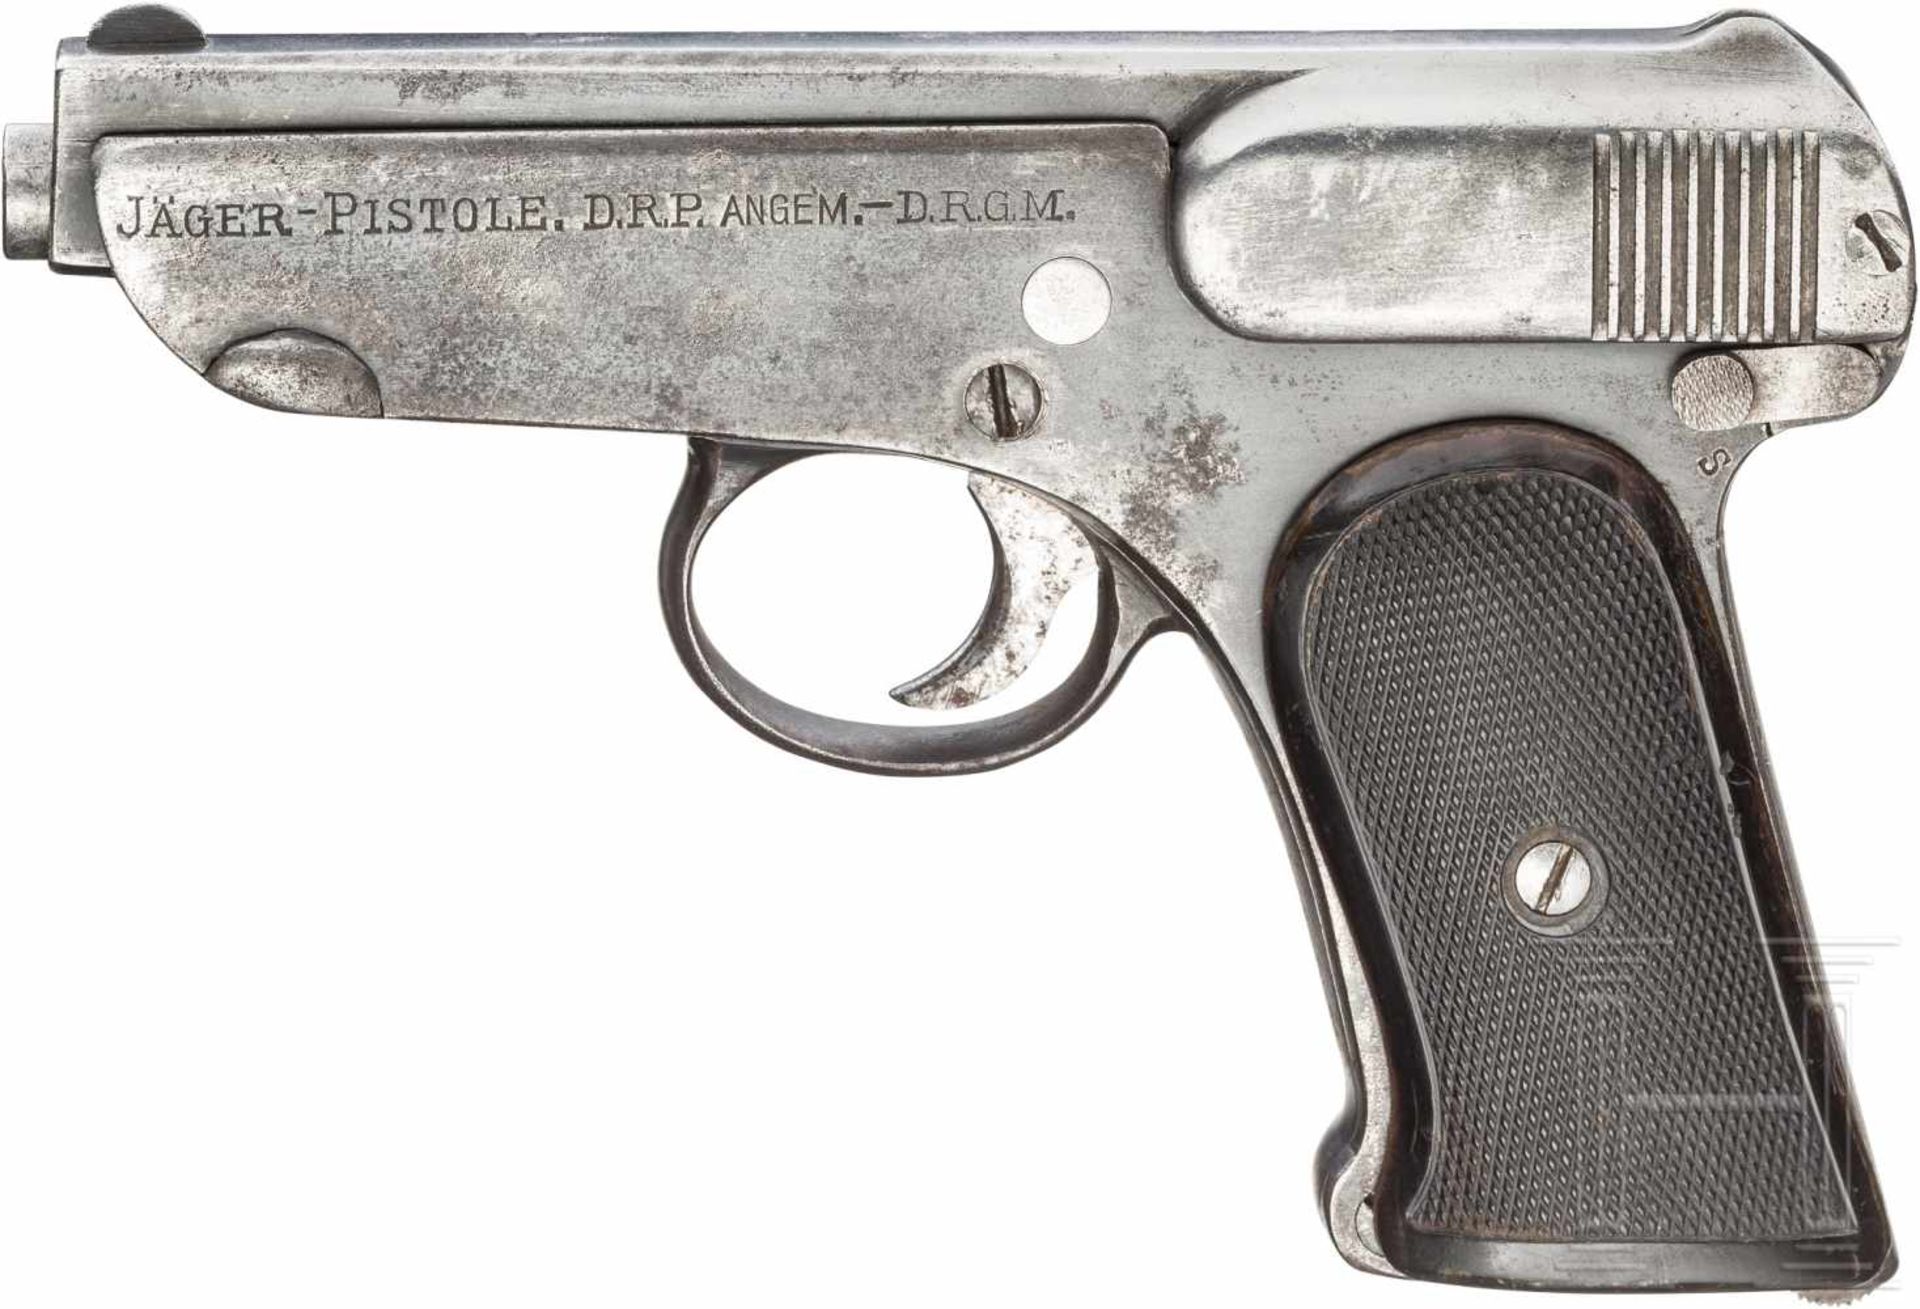 Pistole Jäger, 1. AusführungKal. 7,65 mm Brown., Nr. 2595, Nummerngleich. Blanker Lauf.